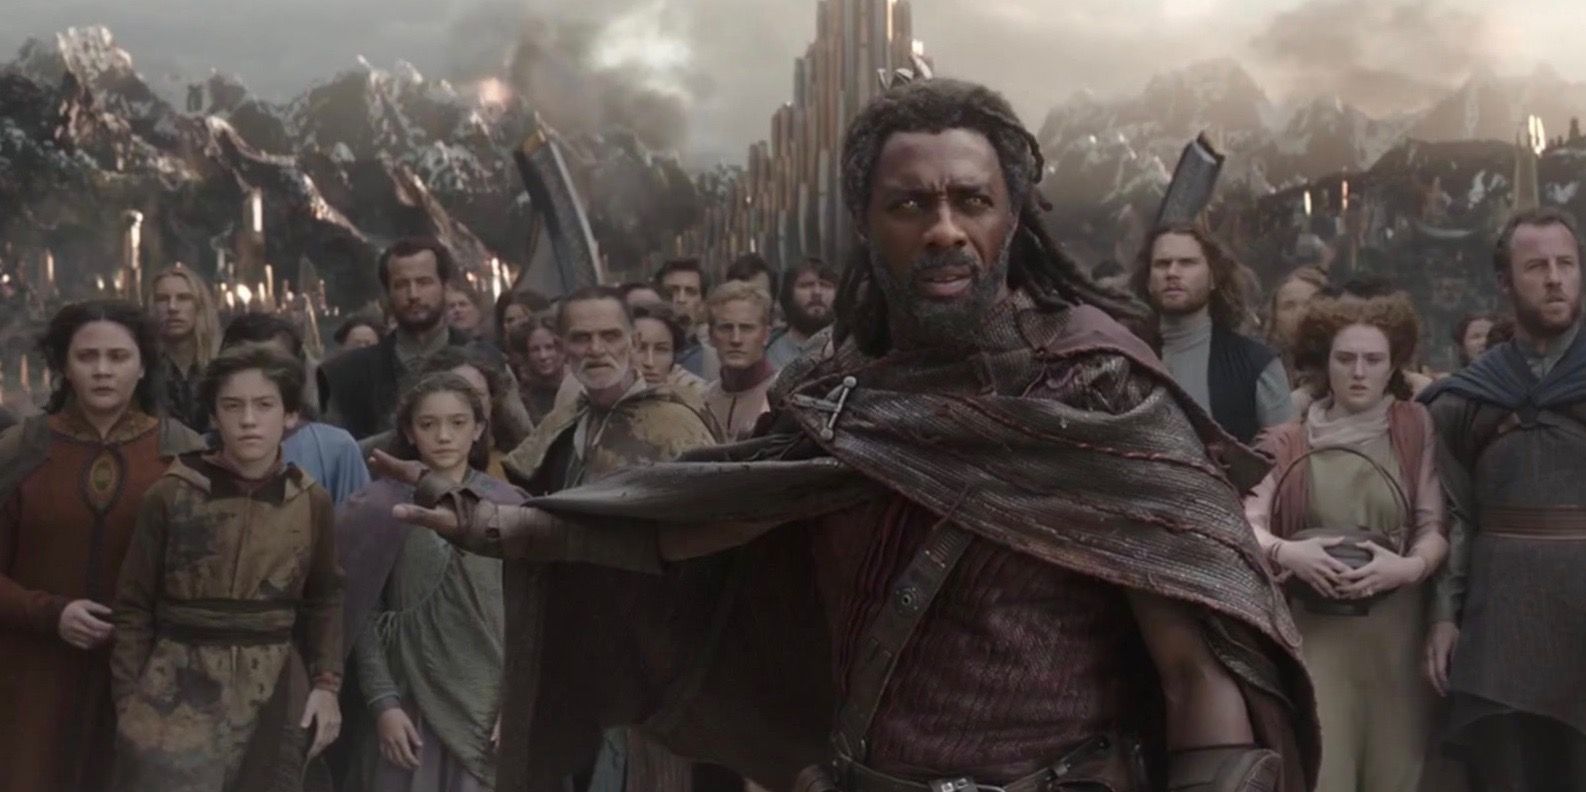 Idris Elba as Heimdall in Thor Ragnarok